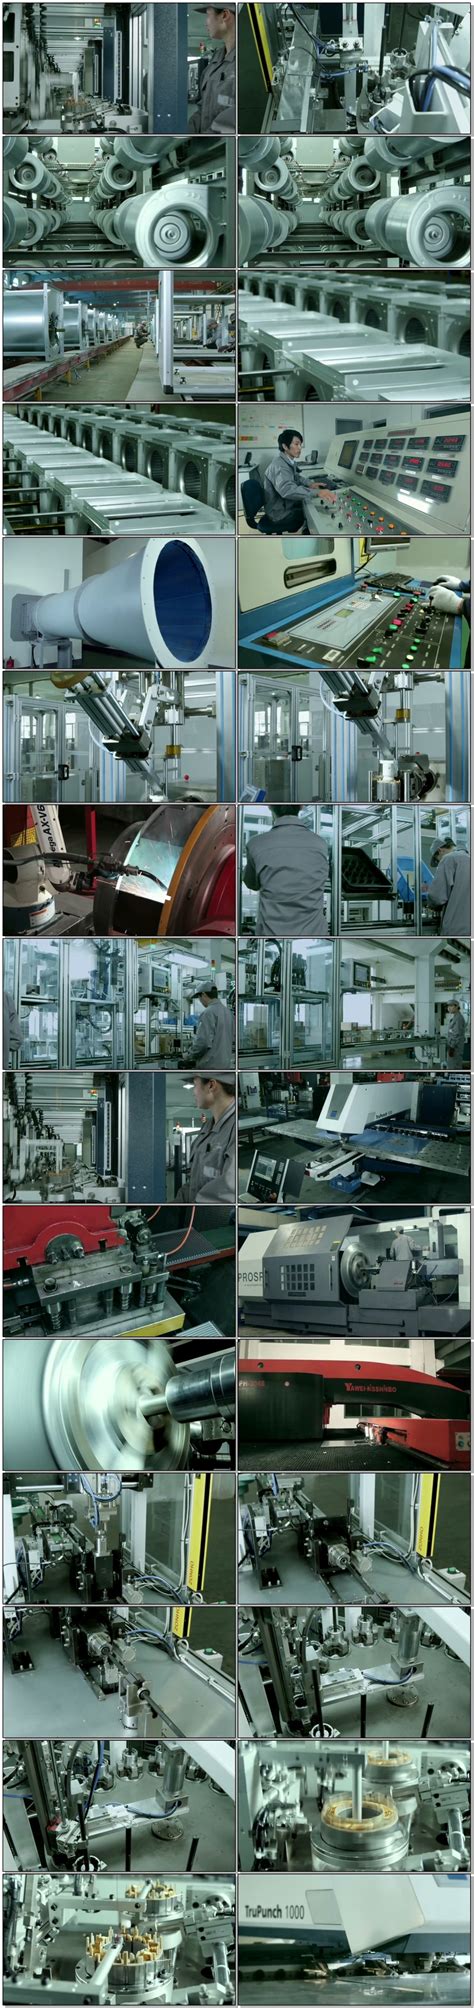 高科技经济发展企业机器人生产线自动化流水工厂车间高清视频素材